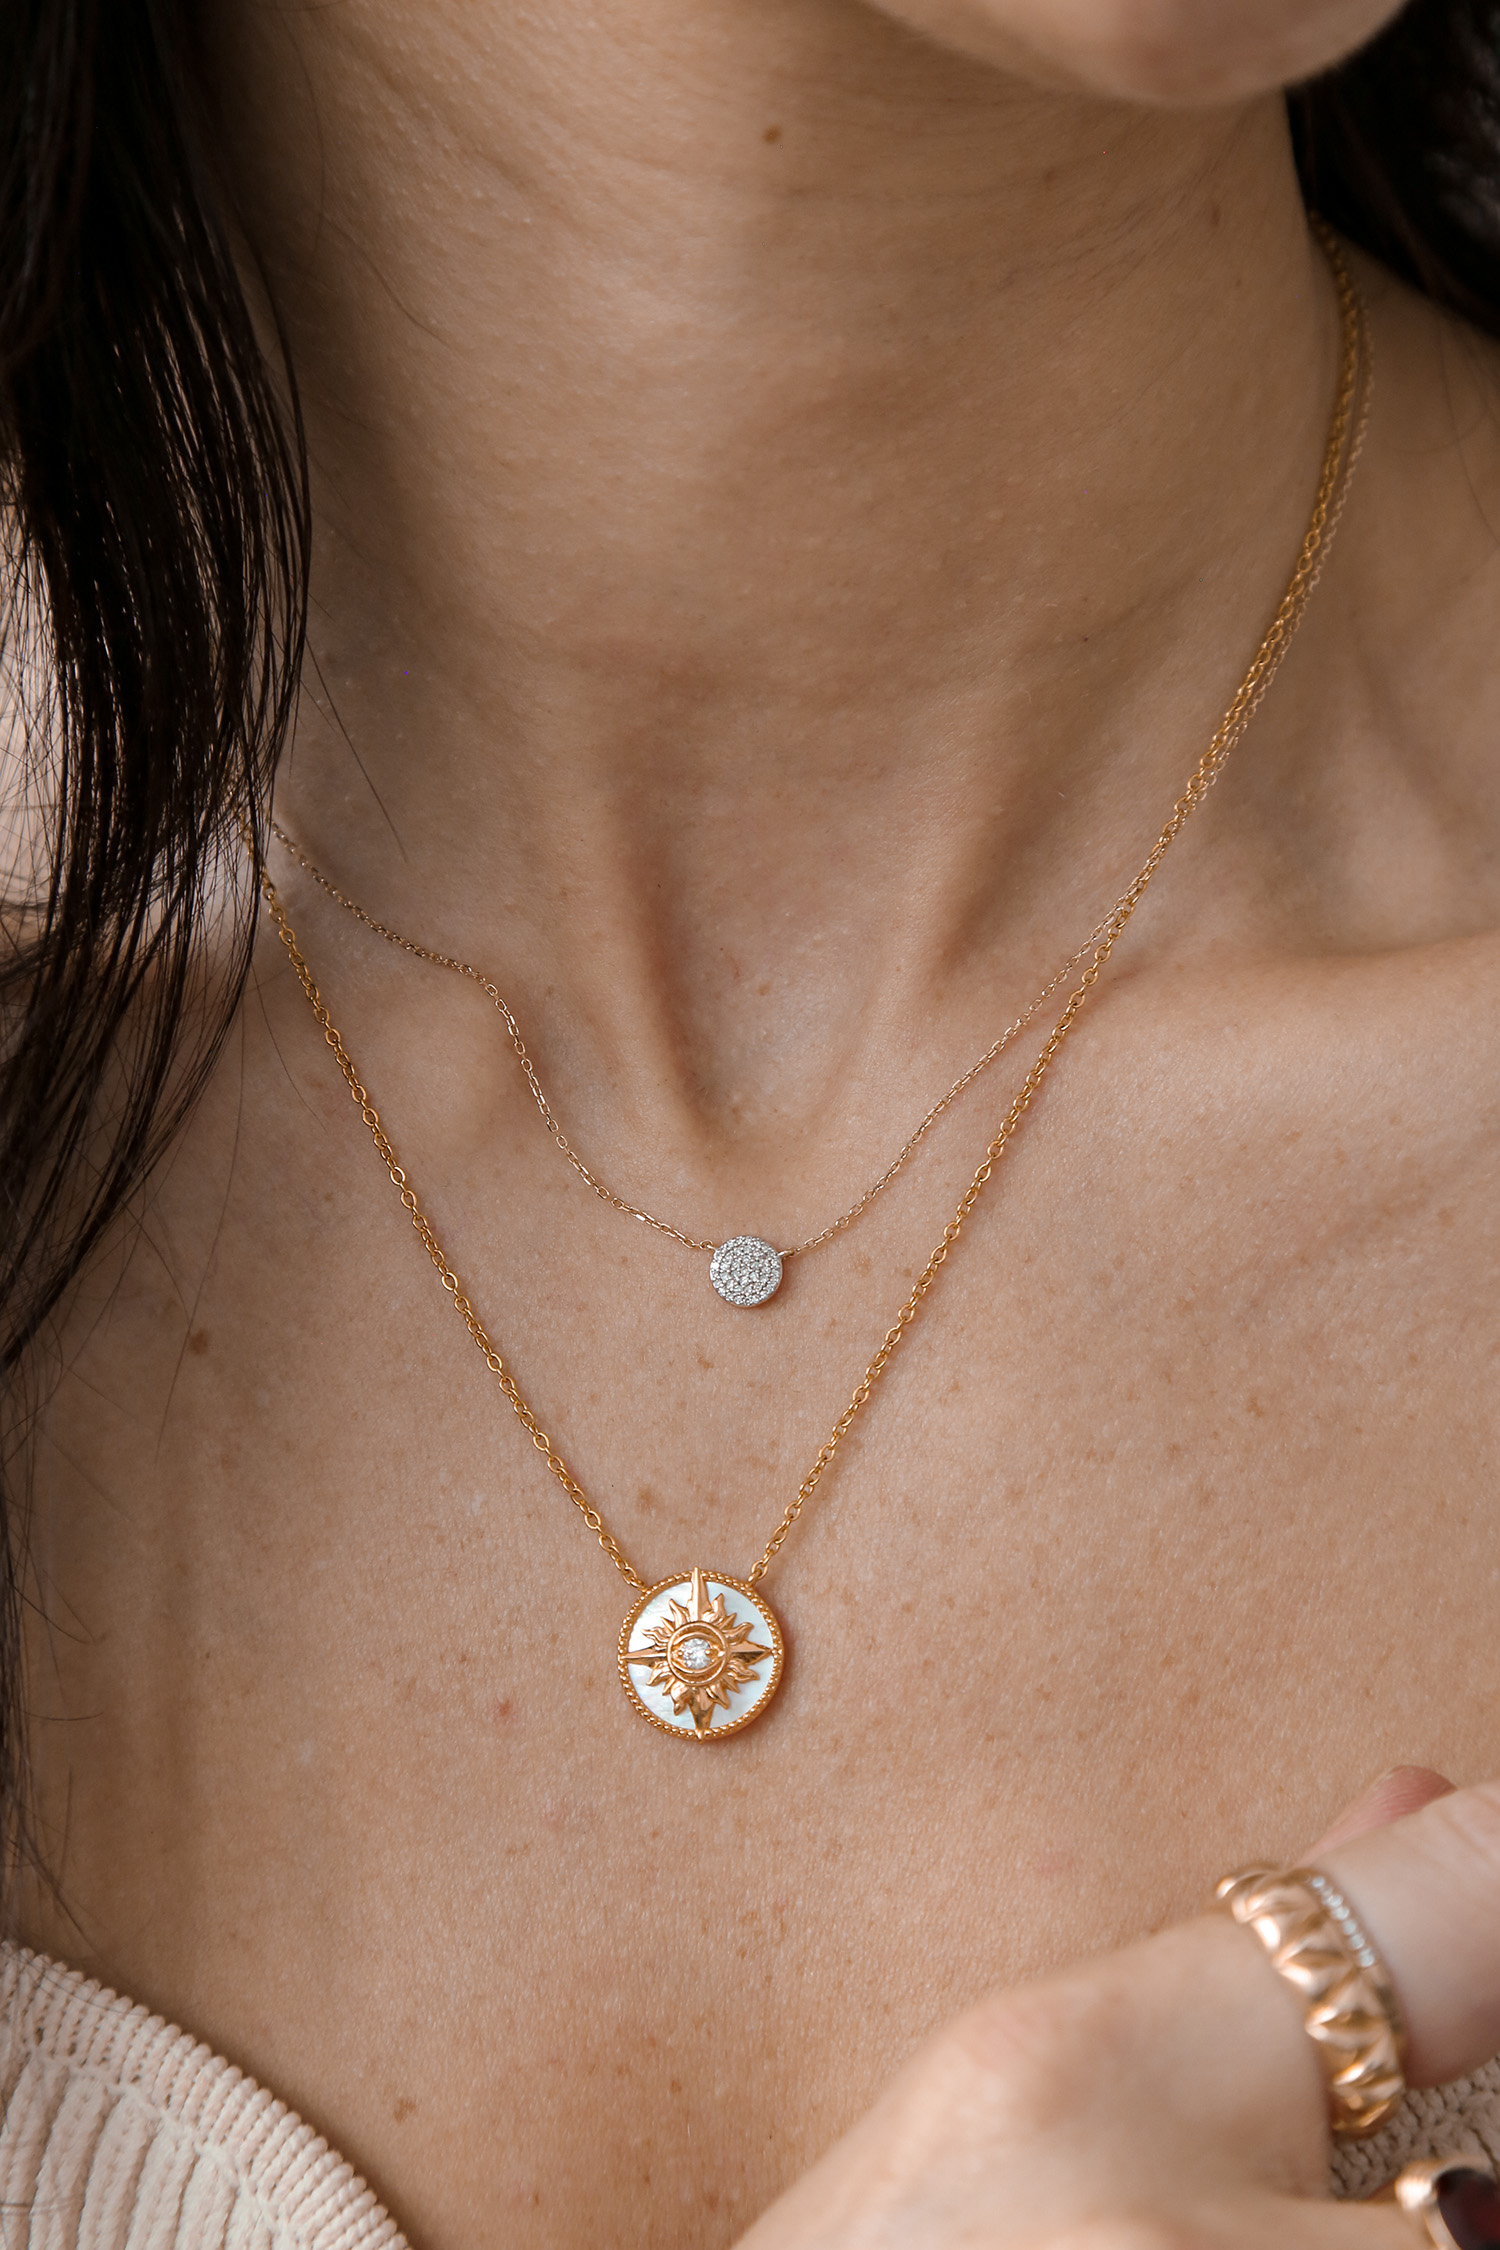 Gingiberi pendant and Mejuri diamond pave necklace